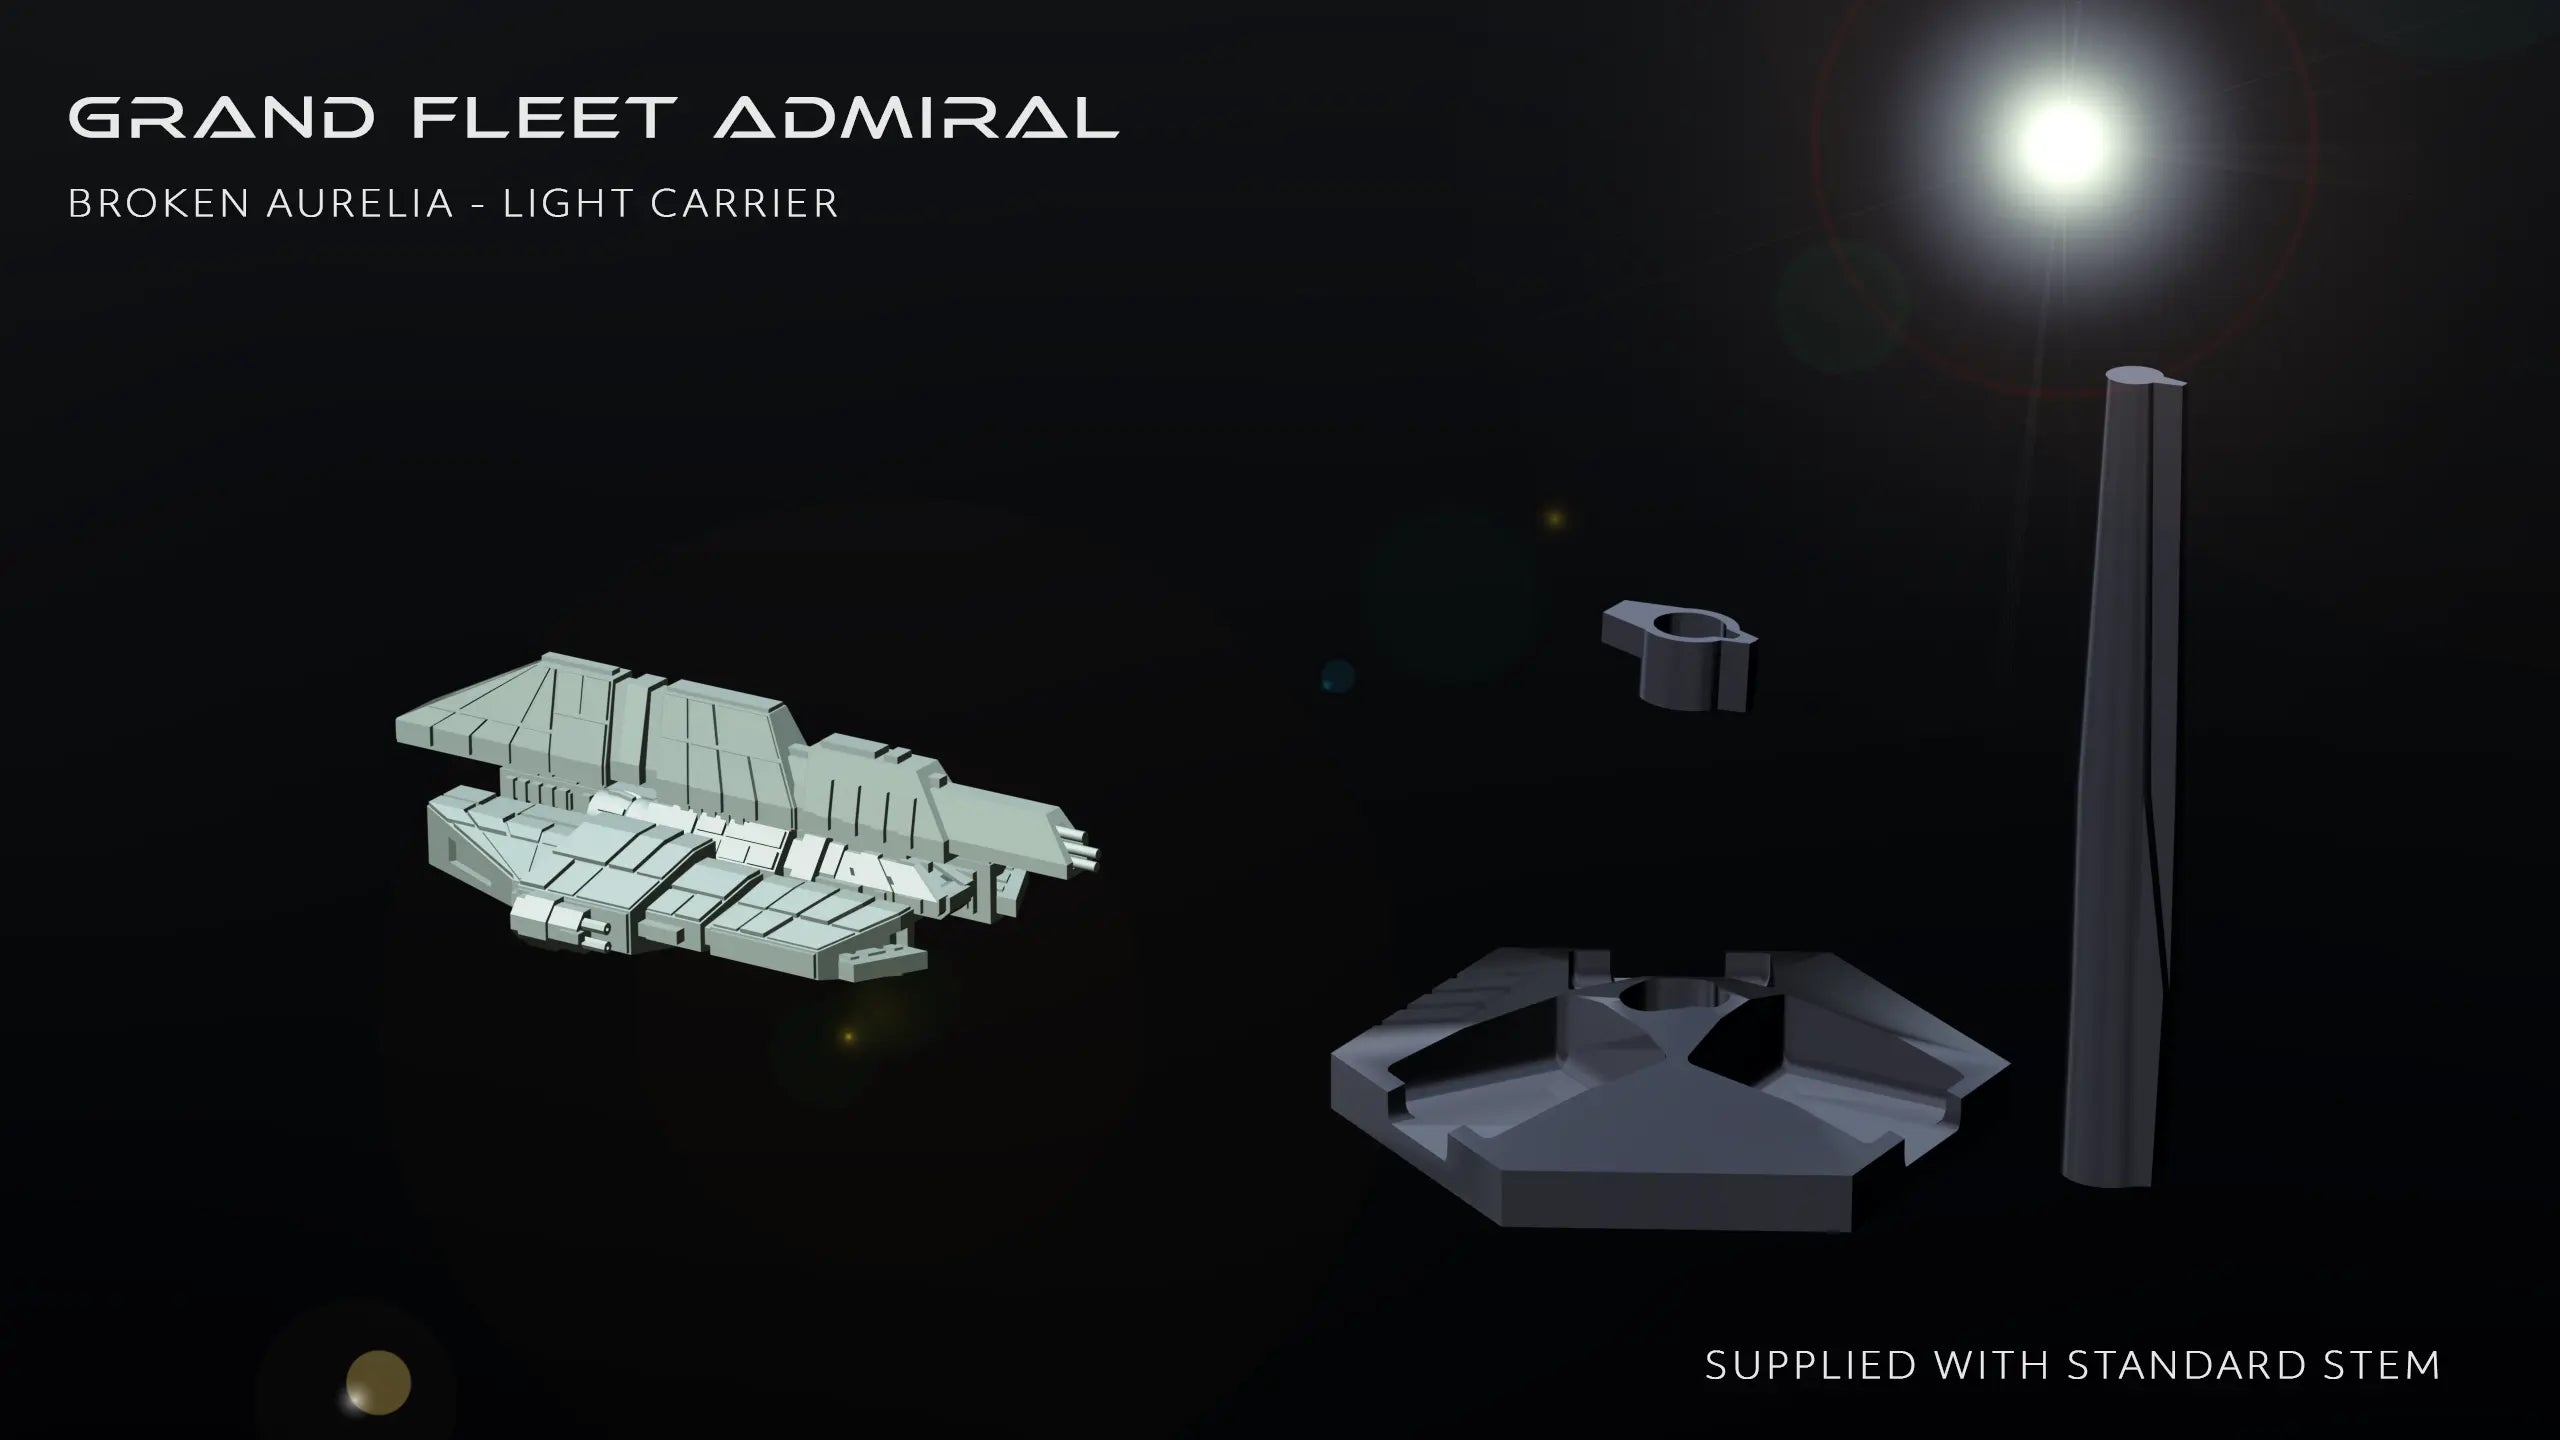 Broken Aurelia - Light Carrier Grand Fleet Admiral